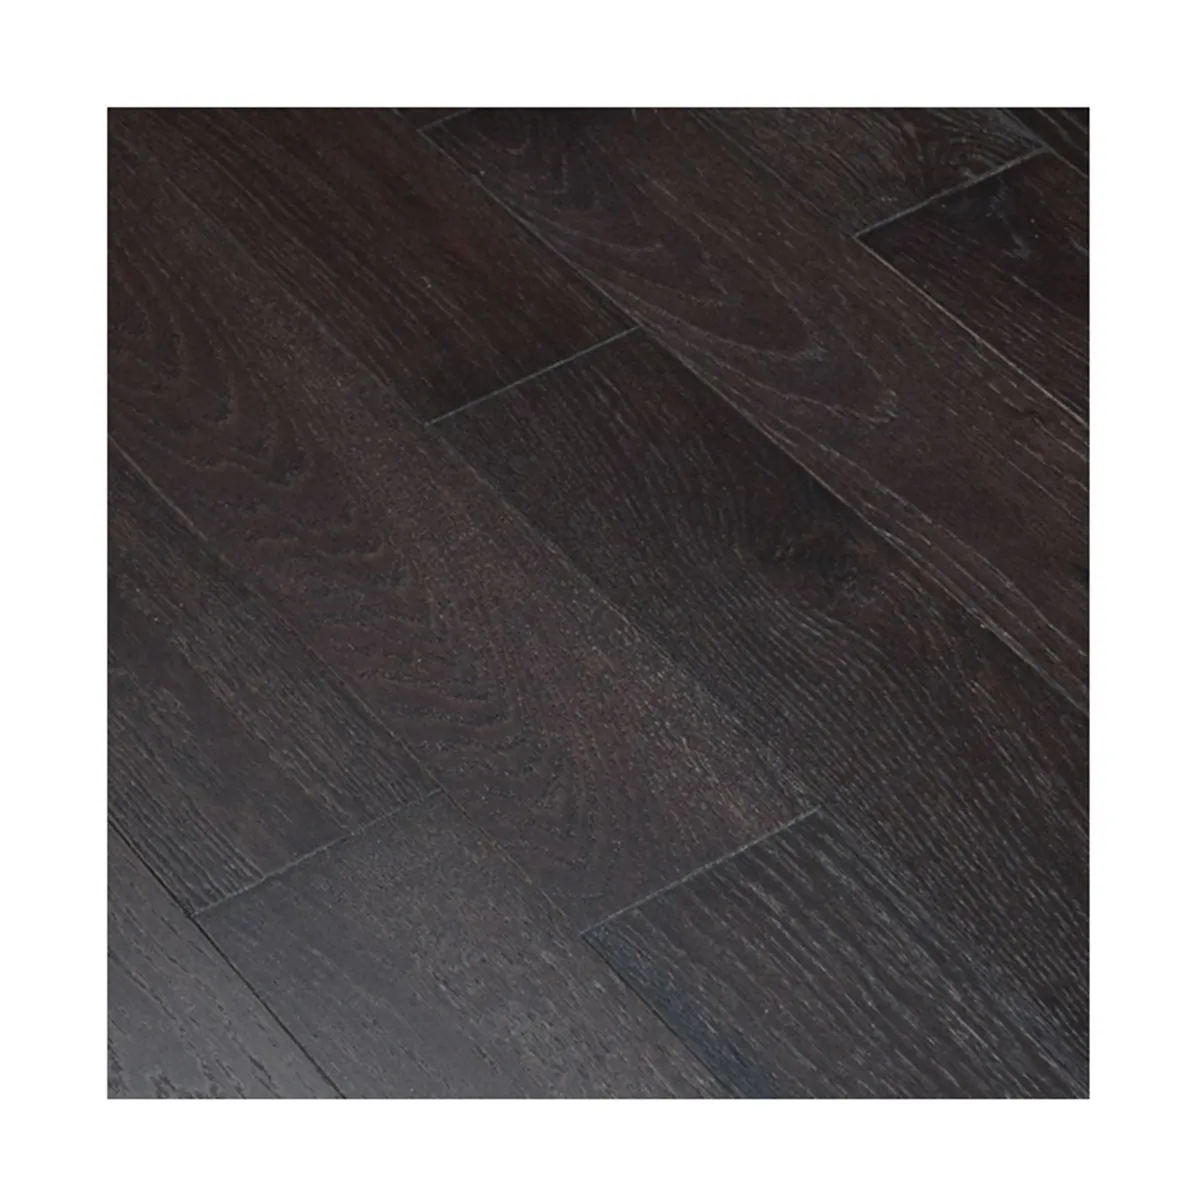 Planche de plancher de bois de qualité stable Teinture Couleur Vente du vendredi définition de plancher de bois d'ingénierie multi-plis